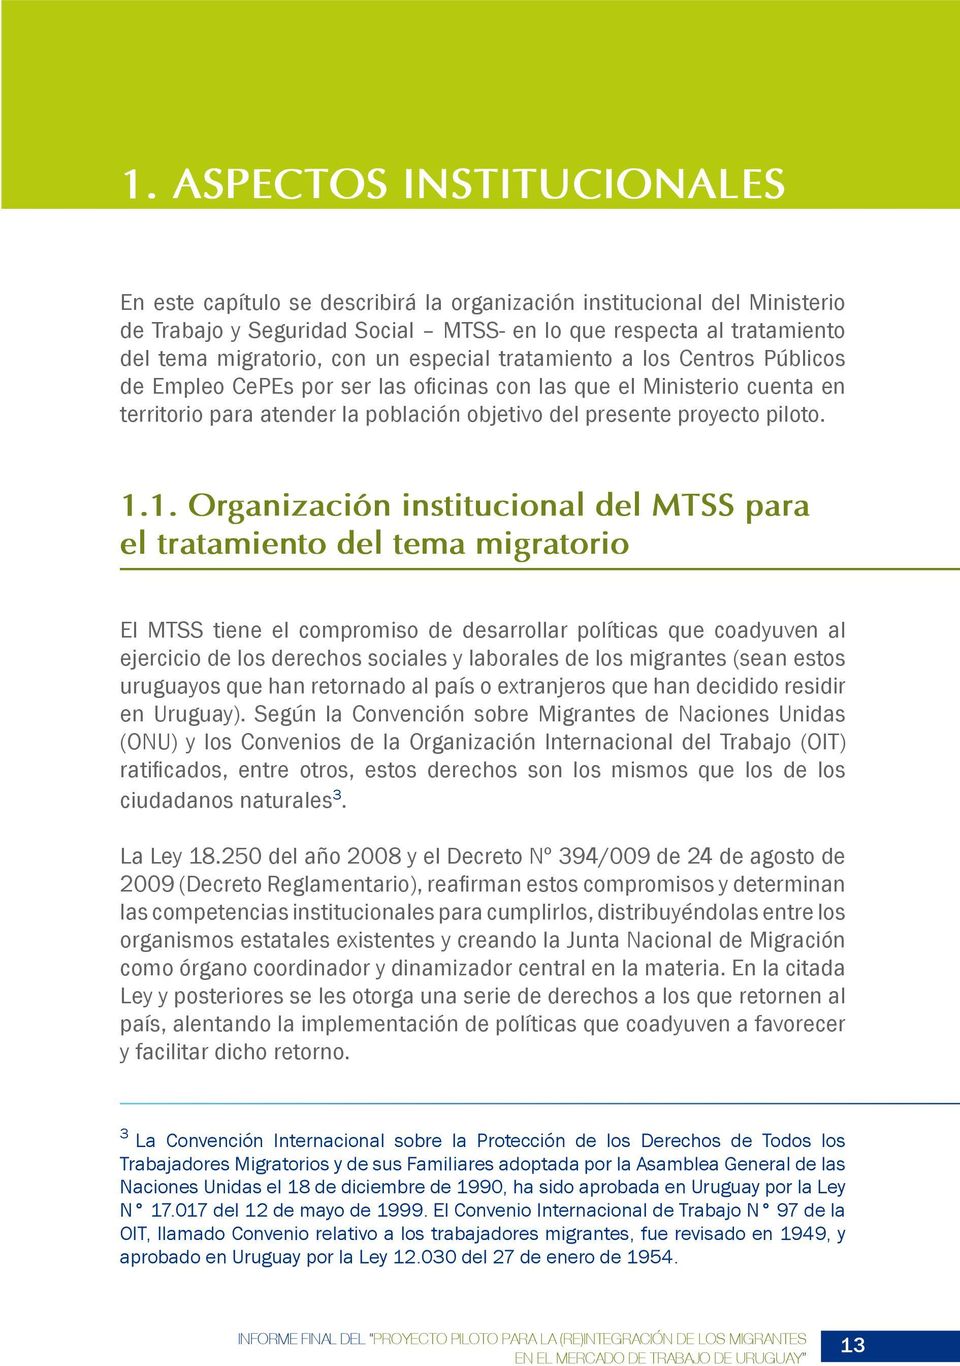 1. Organización institucional del MTSS para el tratamiento del tema migratorio El MTSS tiene el compromiso de desarrollar políticas que coadyuven al ejercicio de los derechos sociales y laborales de